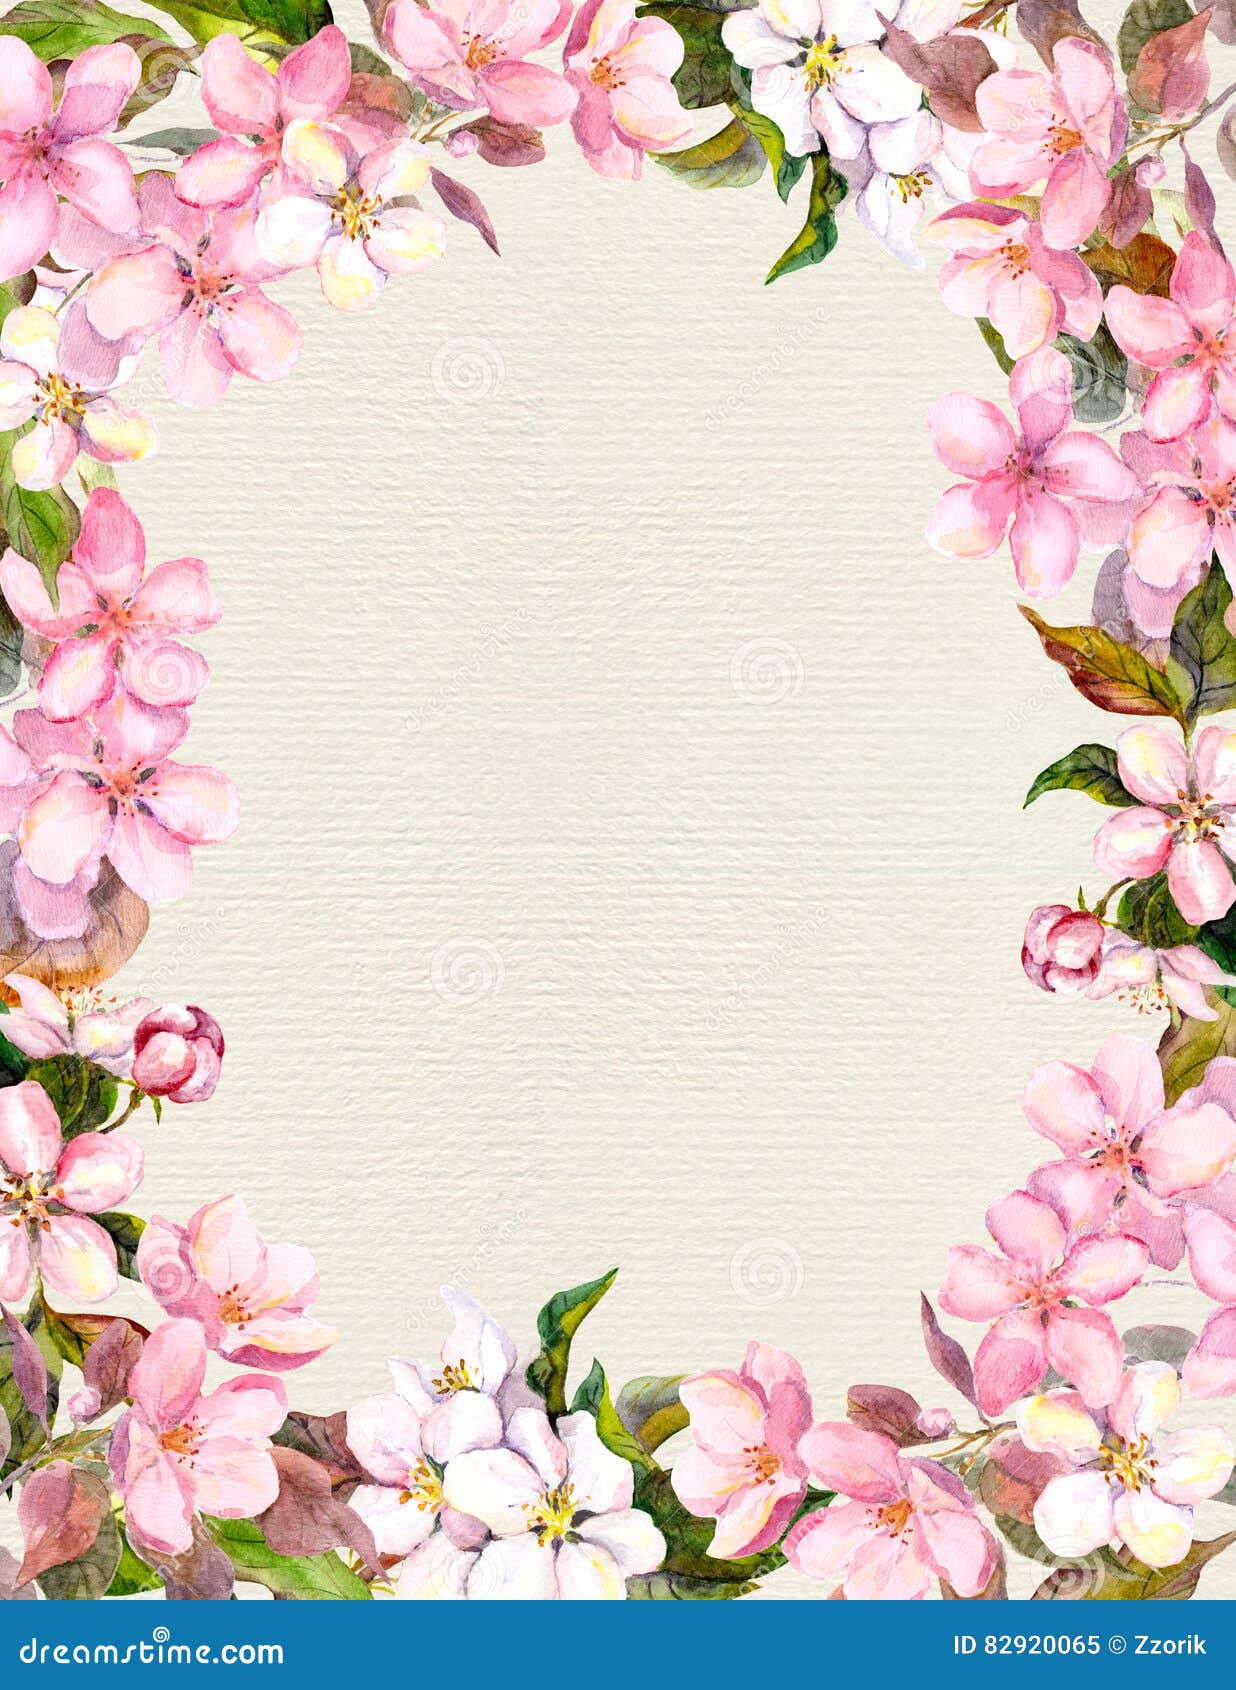 Rosa Blumen Apfel Kirschblute Blumenweinleserahmen Fur Retro Postkarte Aquarell Auf Papierhintergrund Stock Abbildung Illustration Von Blumen Fur 9065